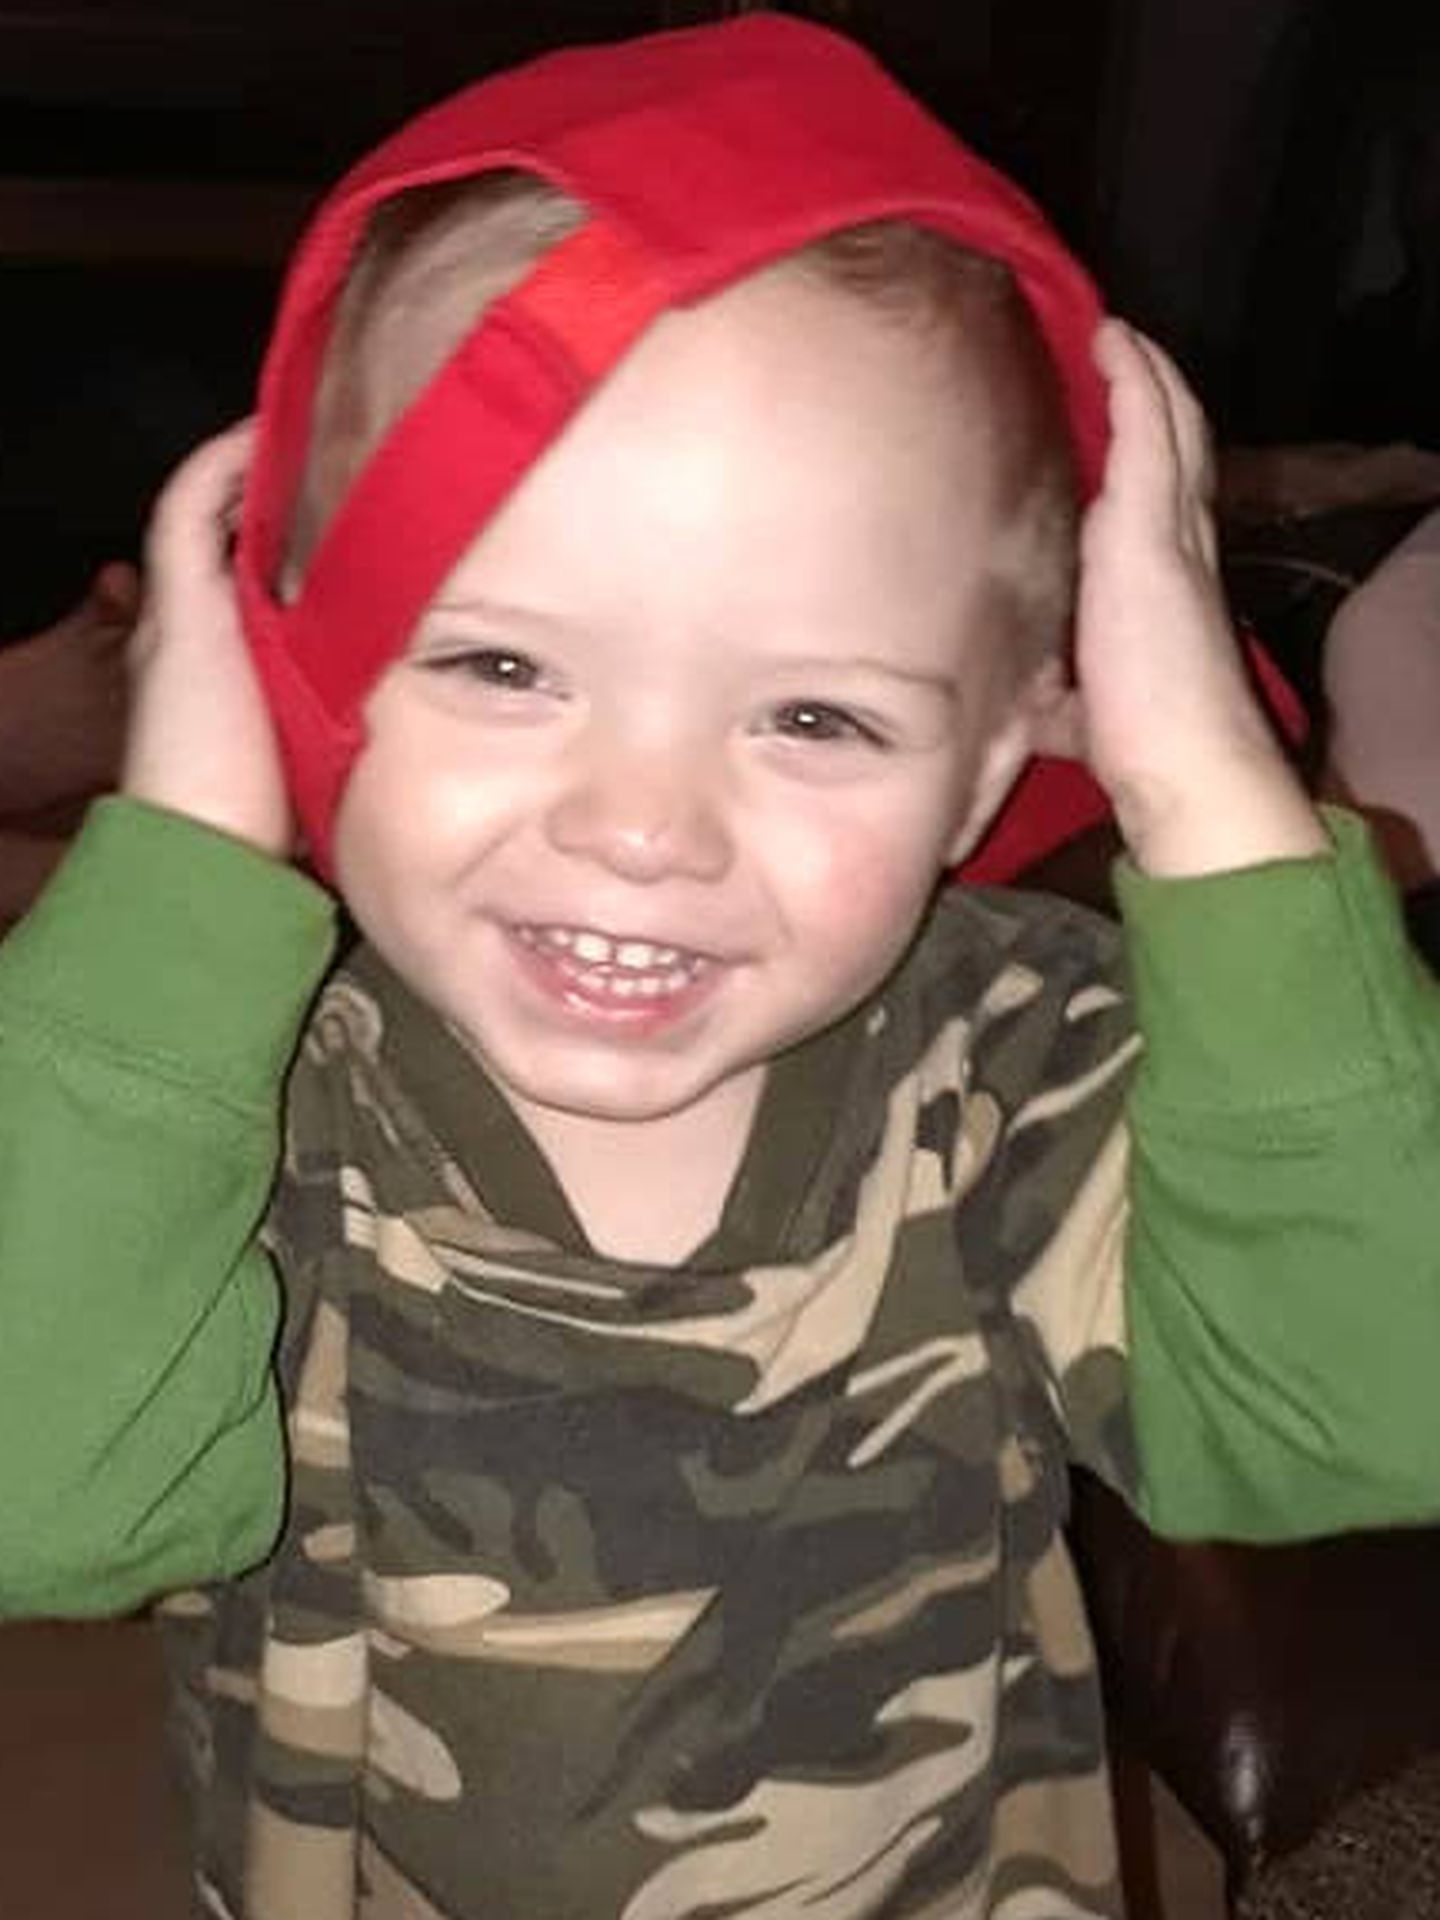 El ánimo de Brody ha crecido desde que ha comenzado 'su' Navidad (Foto: Facebook Team Brody)